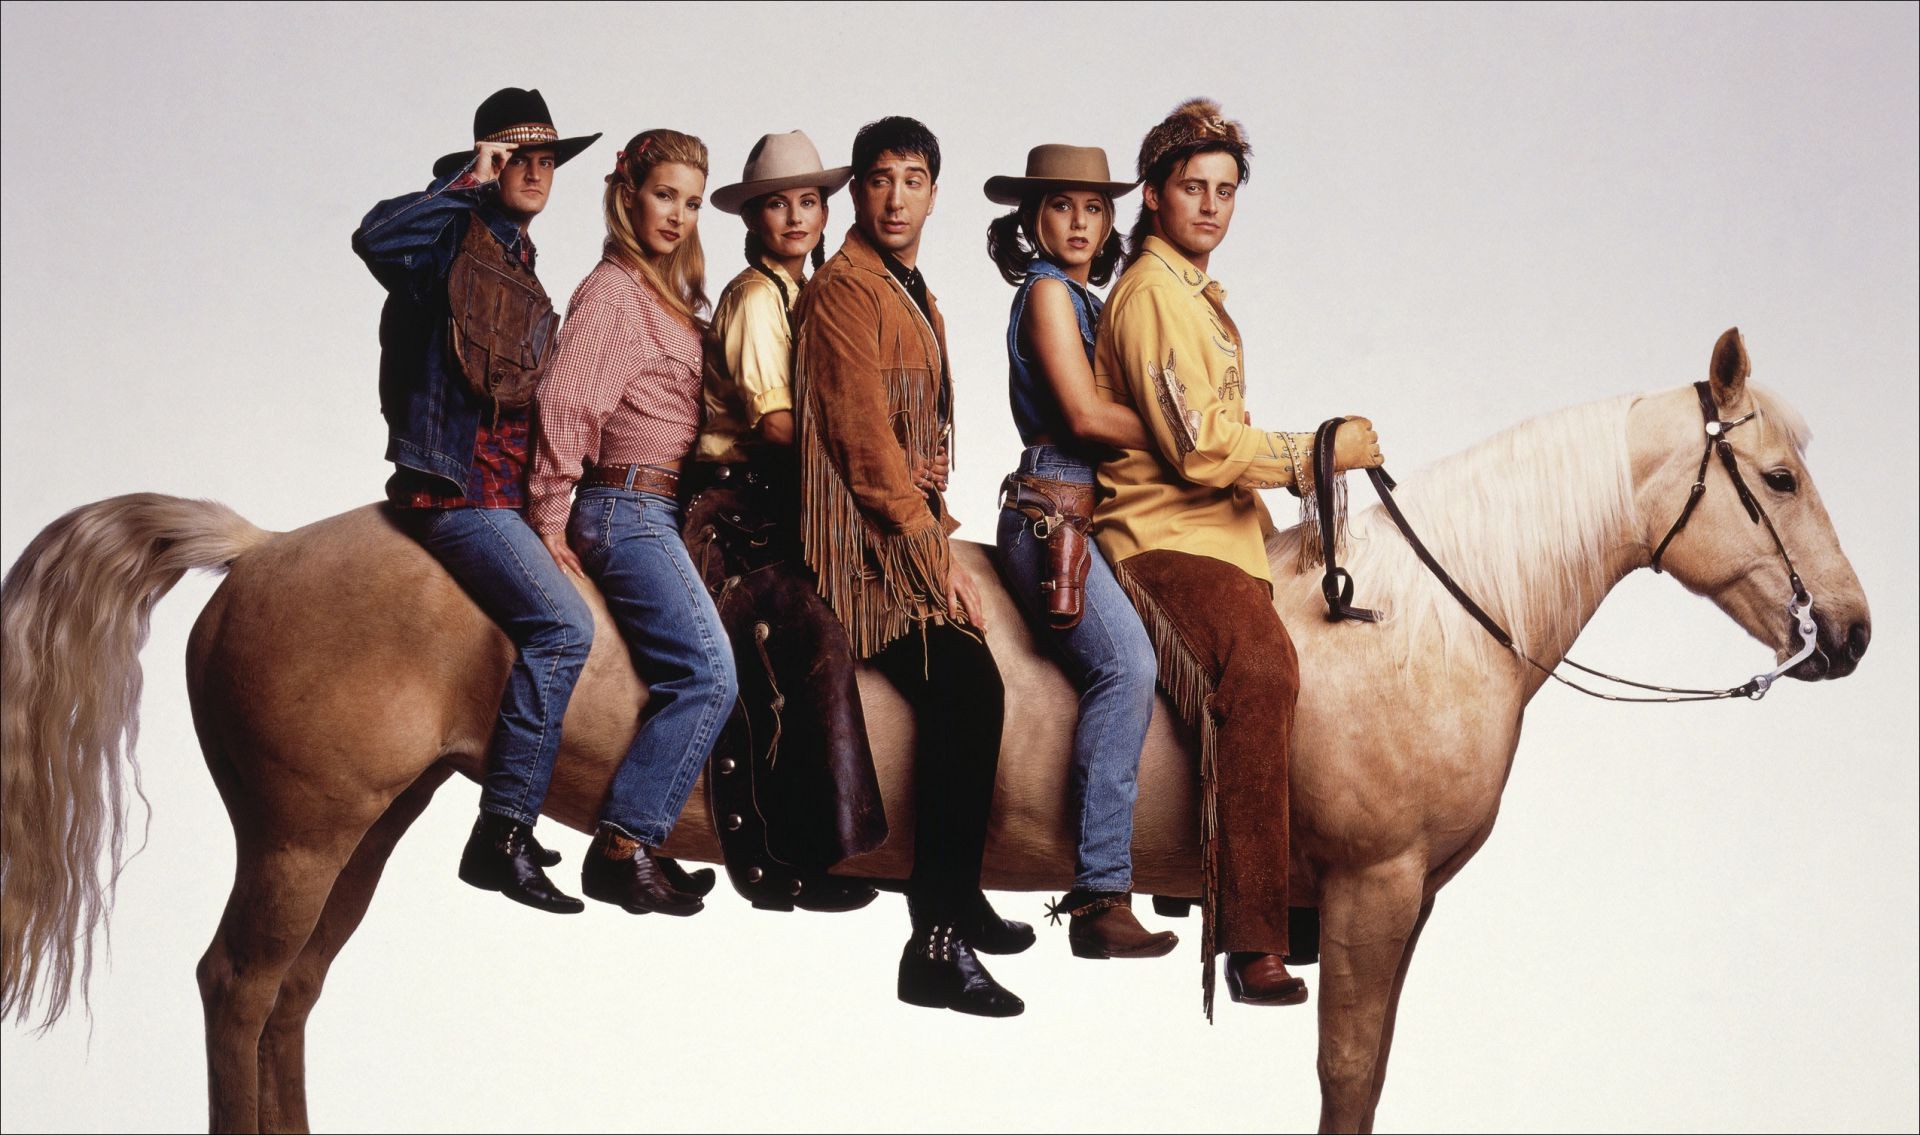 телесериалы конница взрослый млекопитающее сидит носить женщина один конный человек крышка группа два портрет ковбойская шляпа ковбой лошадь движения пастушка отдых